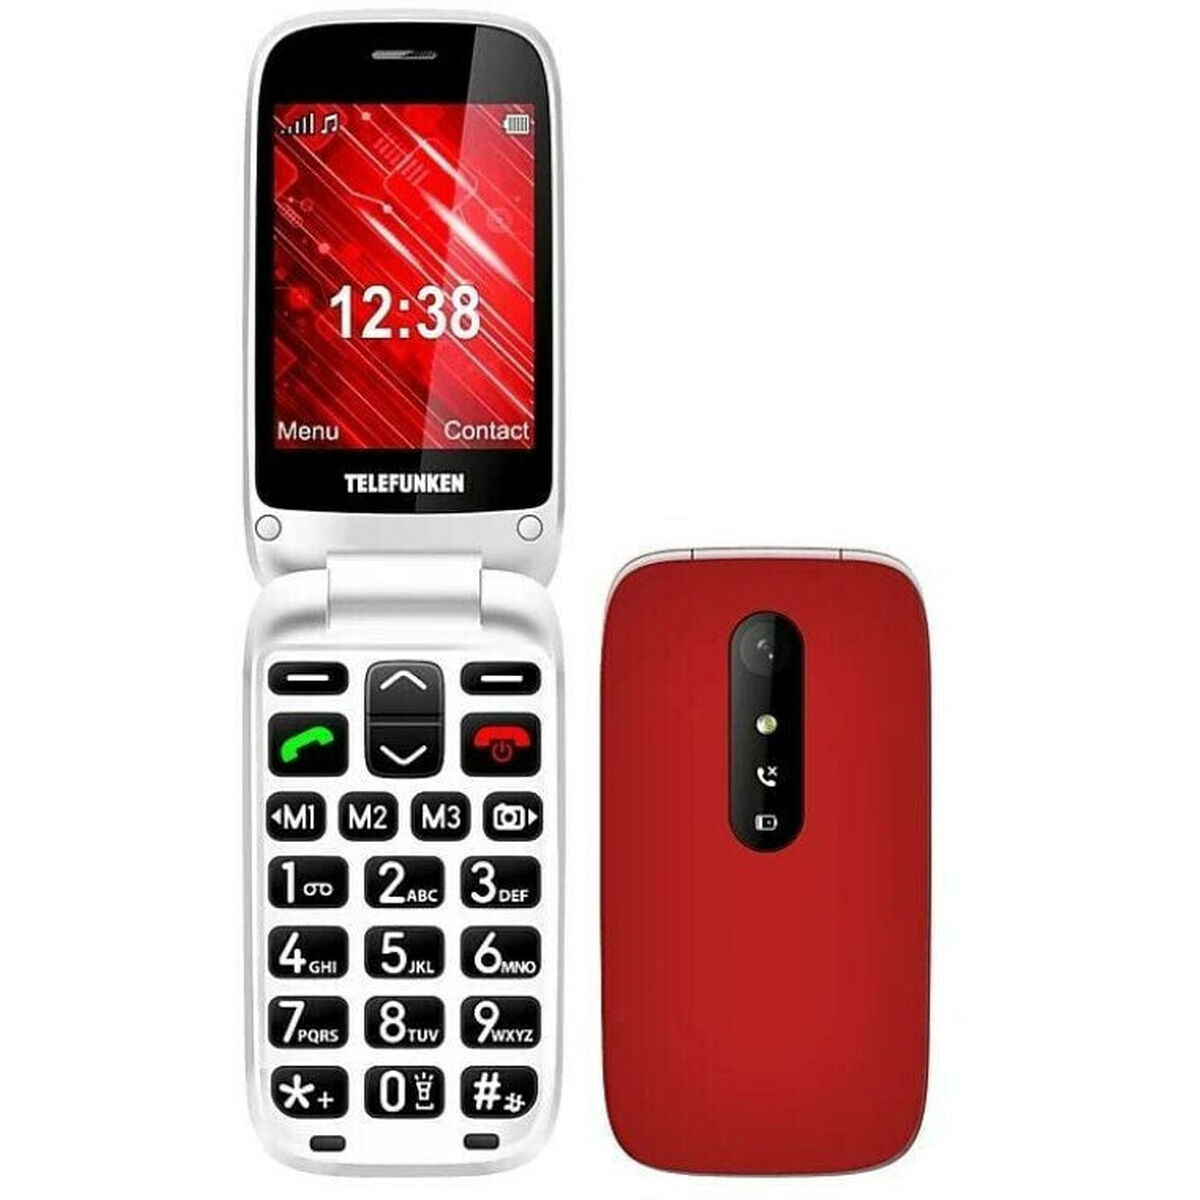 Mobiltelefon til ældre mennesker Telefunken S445 32 GB 2,8"